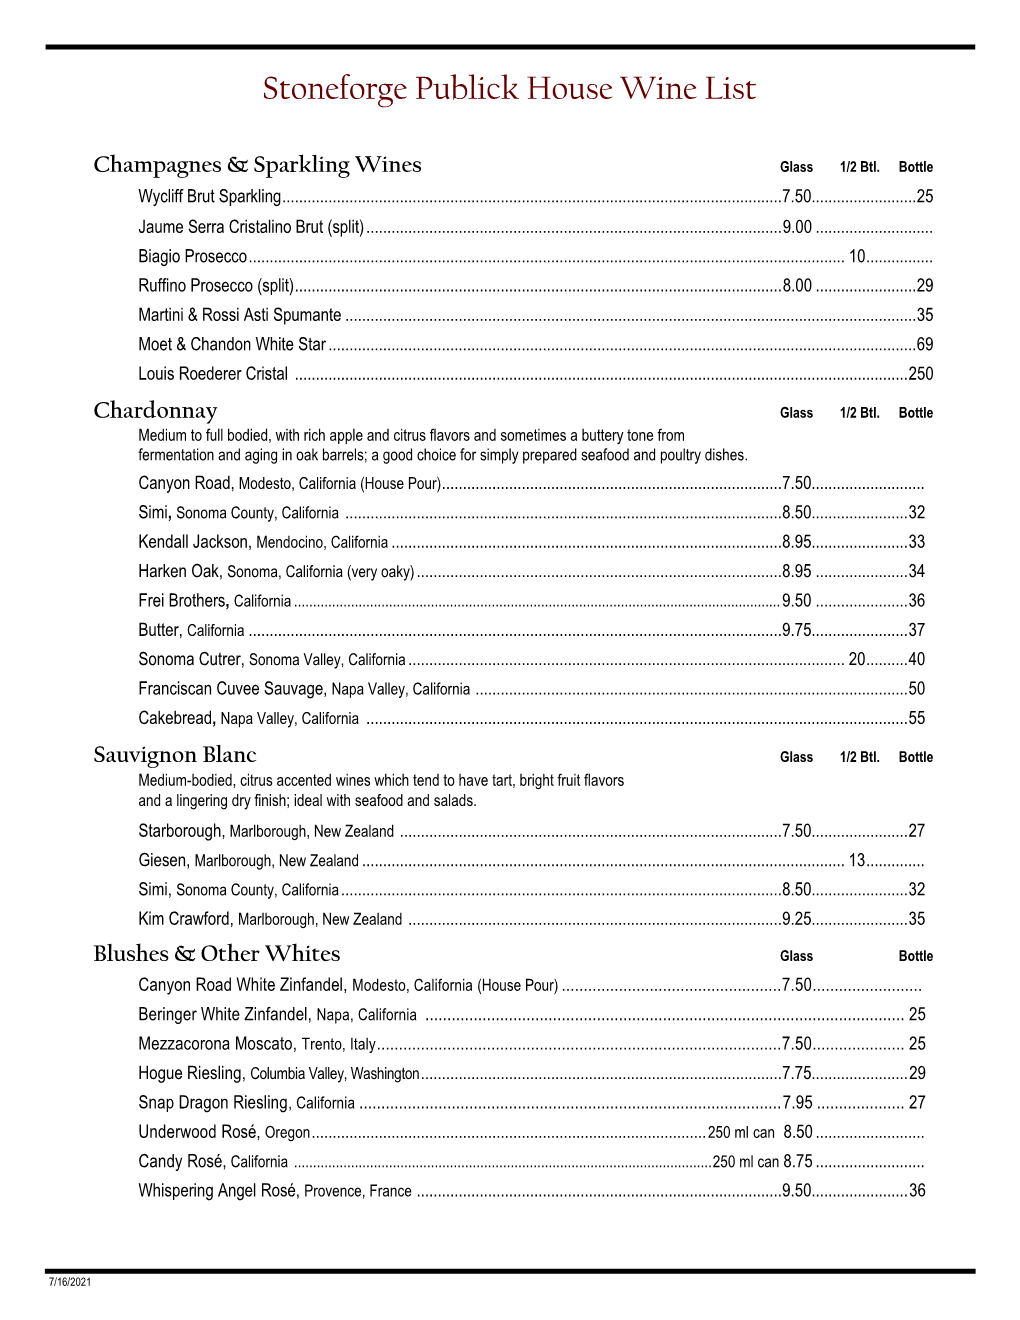 Publick House Wine List